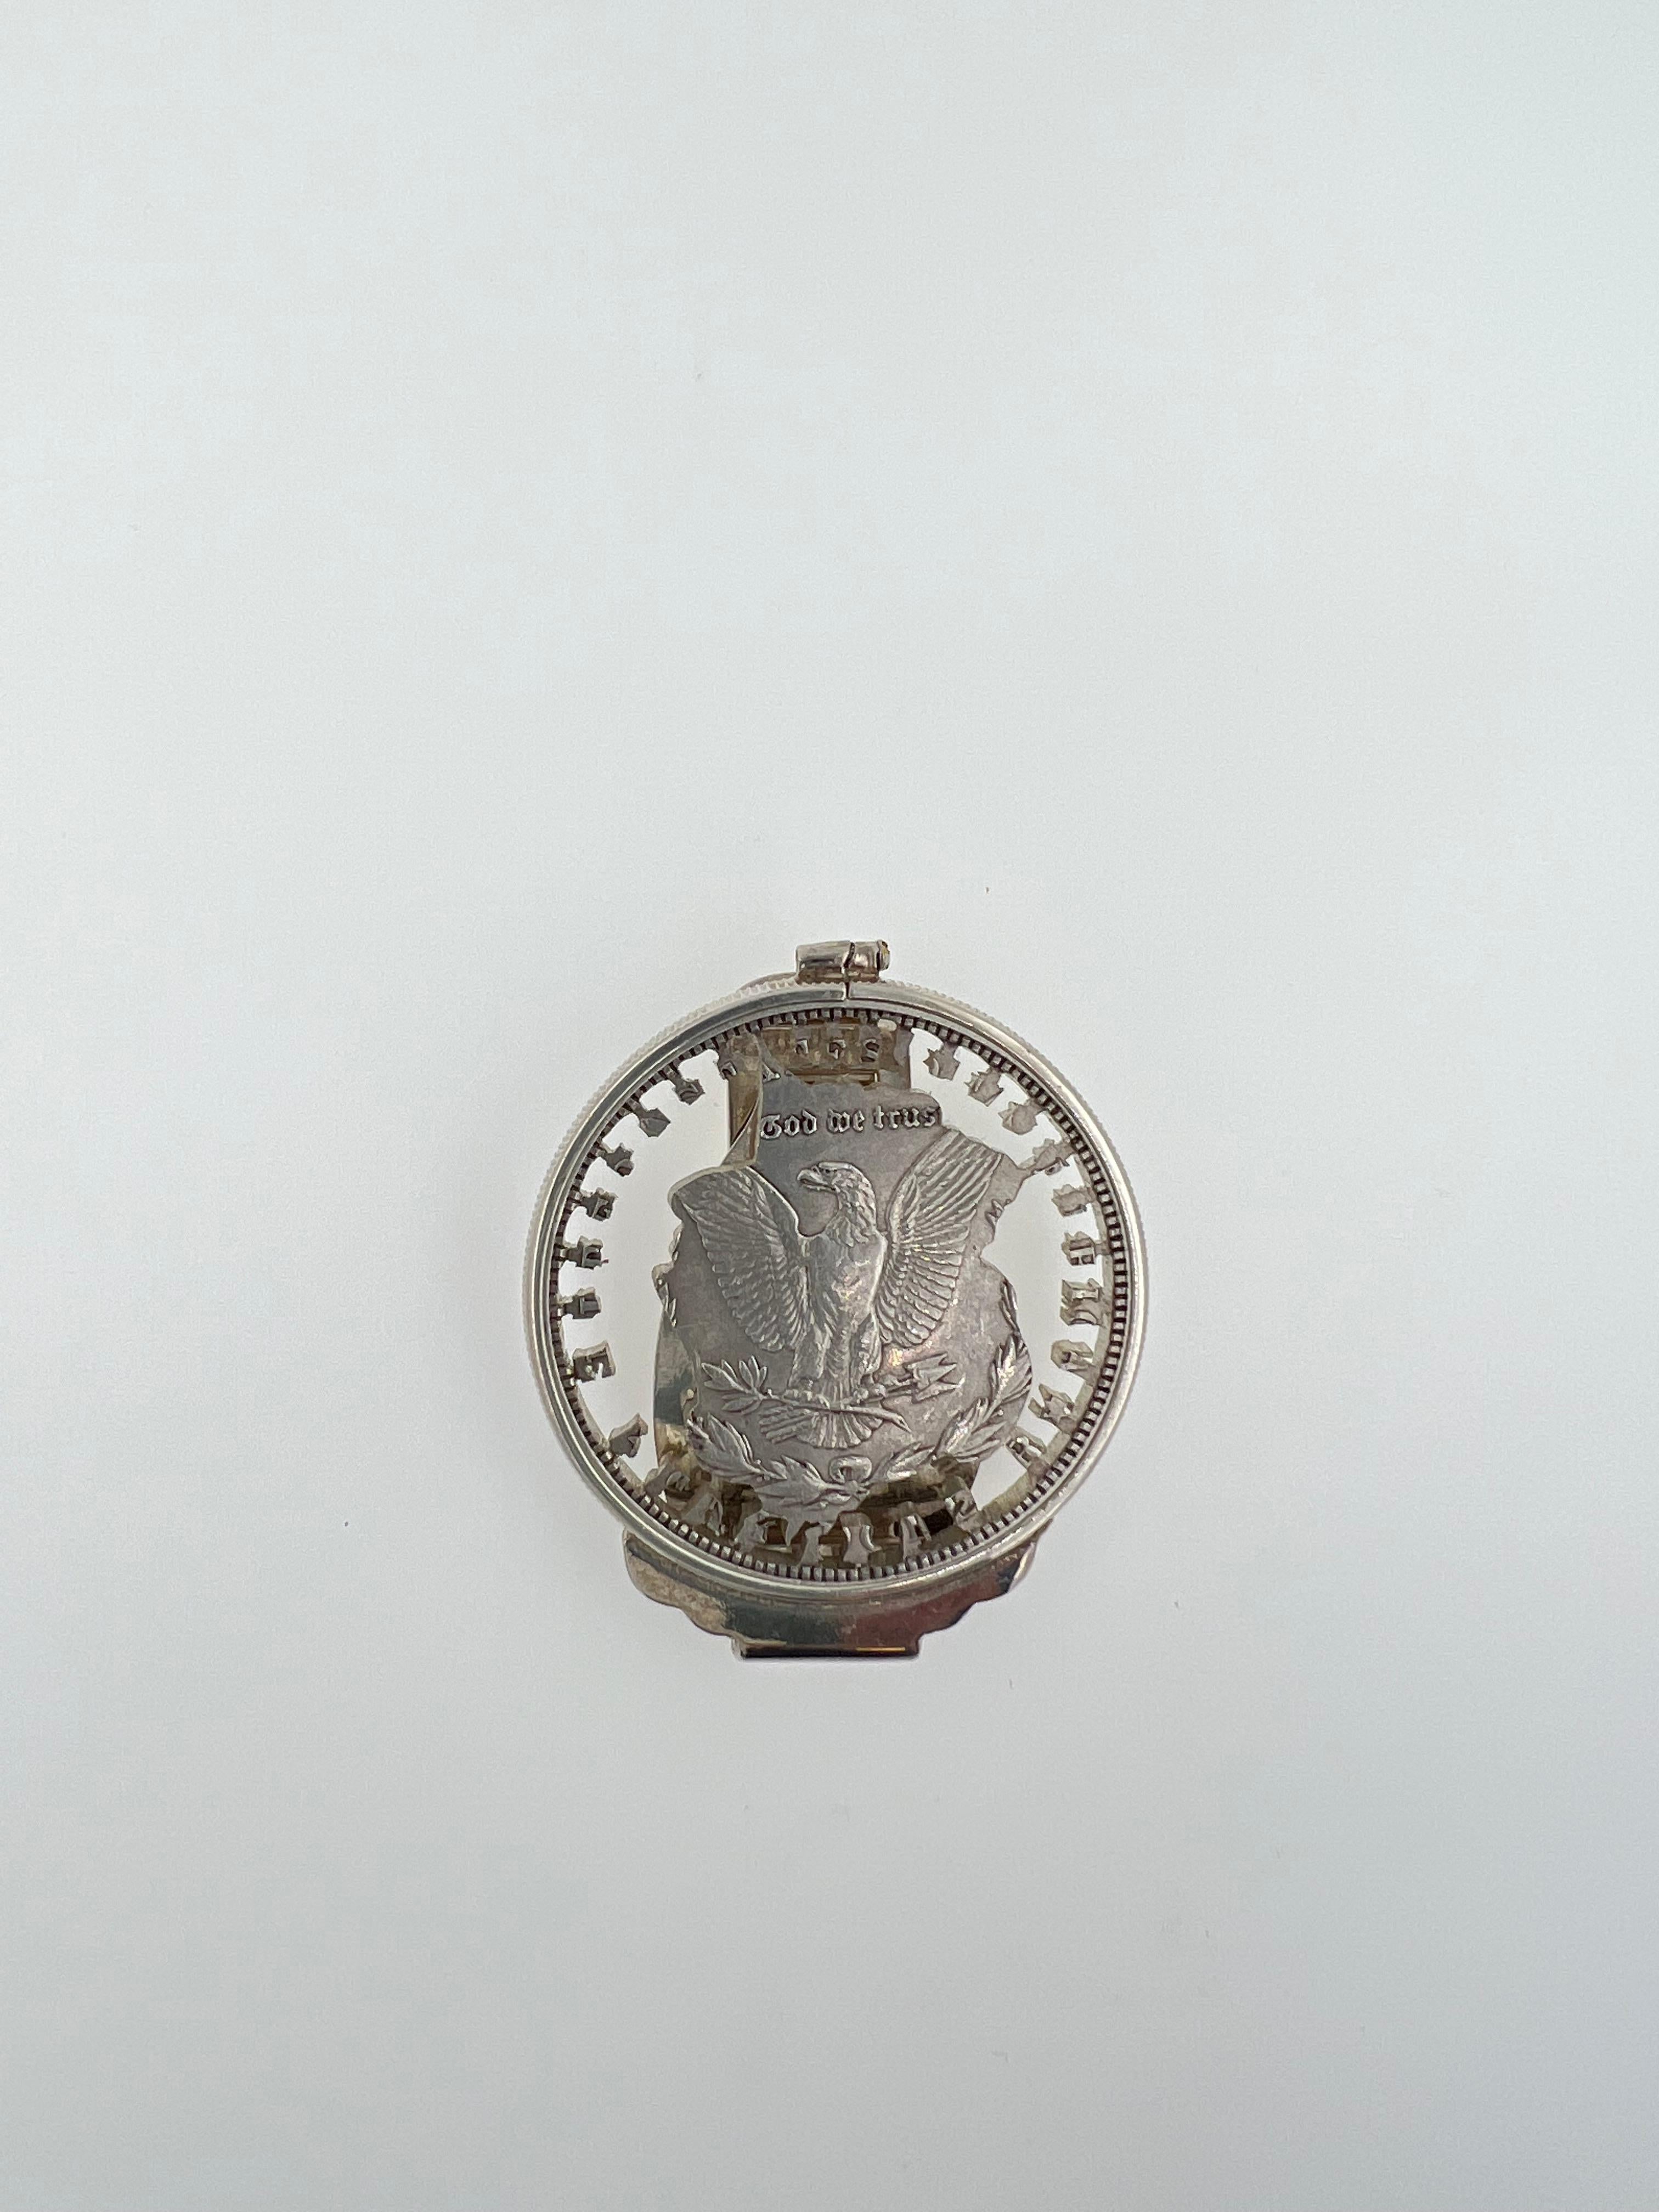 Argent massif 925 + Rhodium blanc
Véritable pièce de monnaie vintage 
Aigle sculpté dans une pièce de monnaie
Très bon rapport qualité/prix